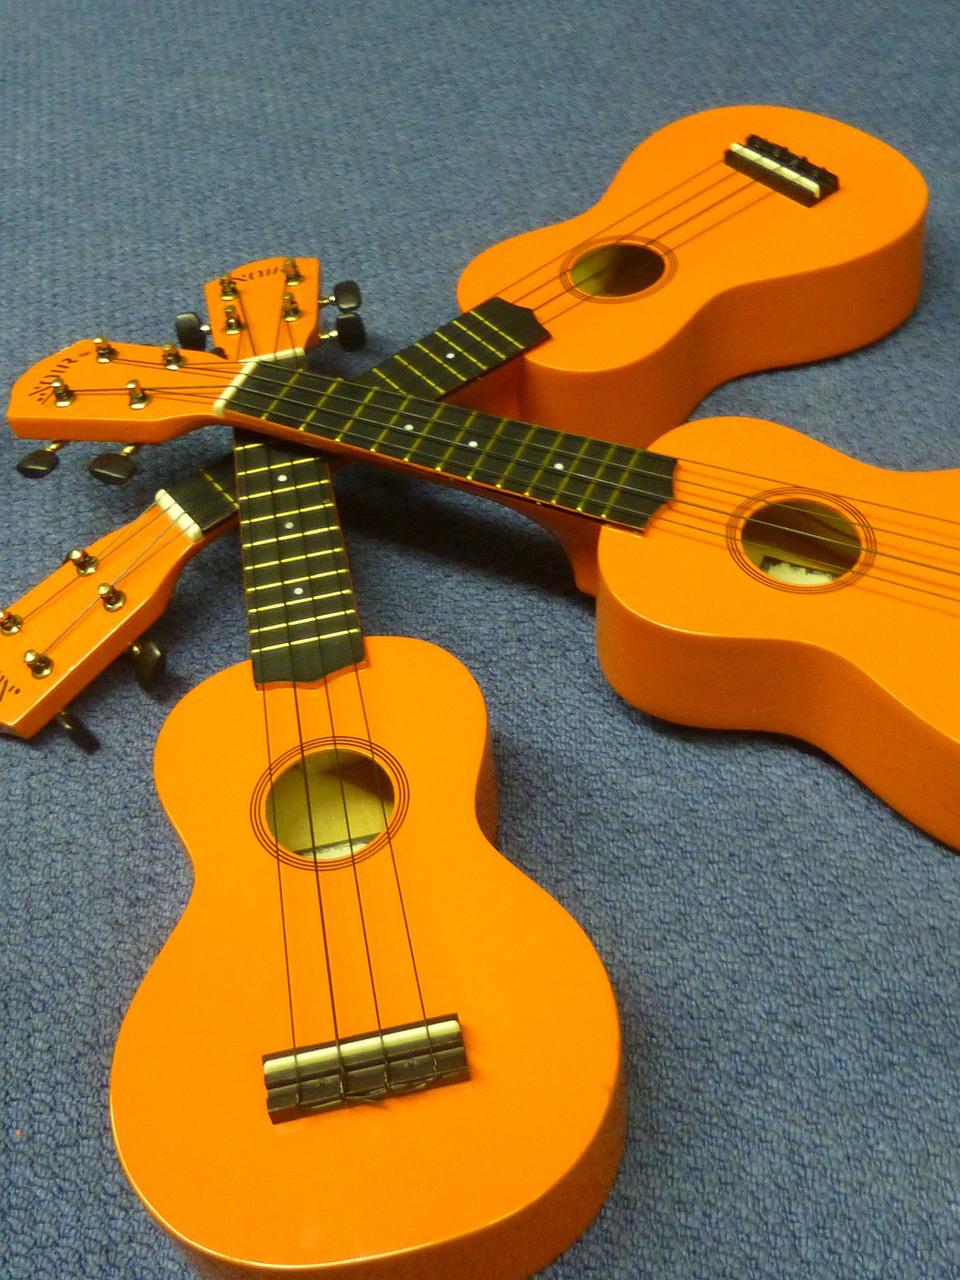 ukulele-gd08b269c9_1280.jpg